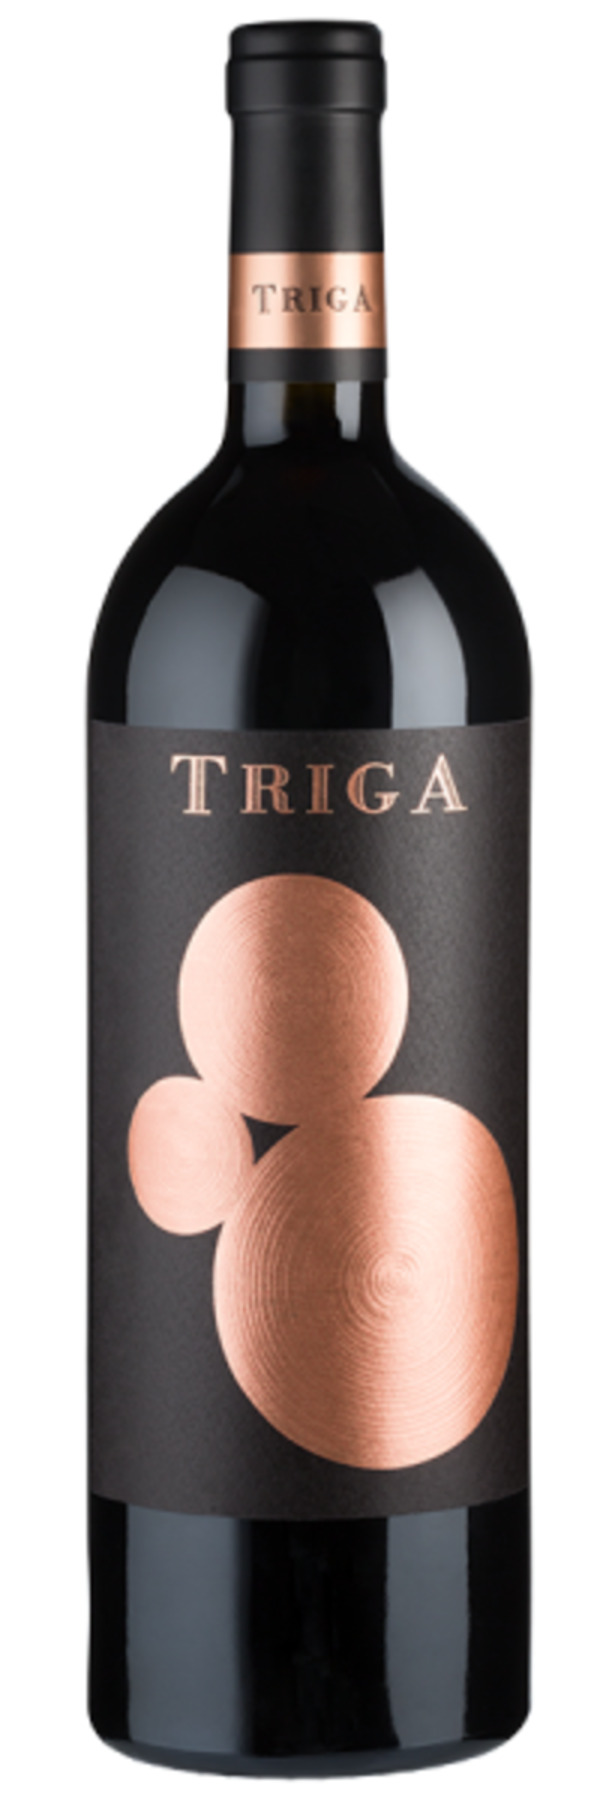 Bild 1 von Triga - 2018 - Bodegas Volver - Spanischer Rotwein